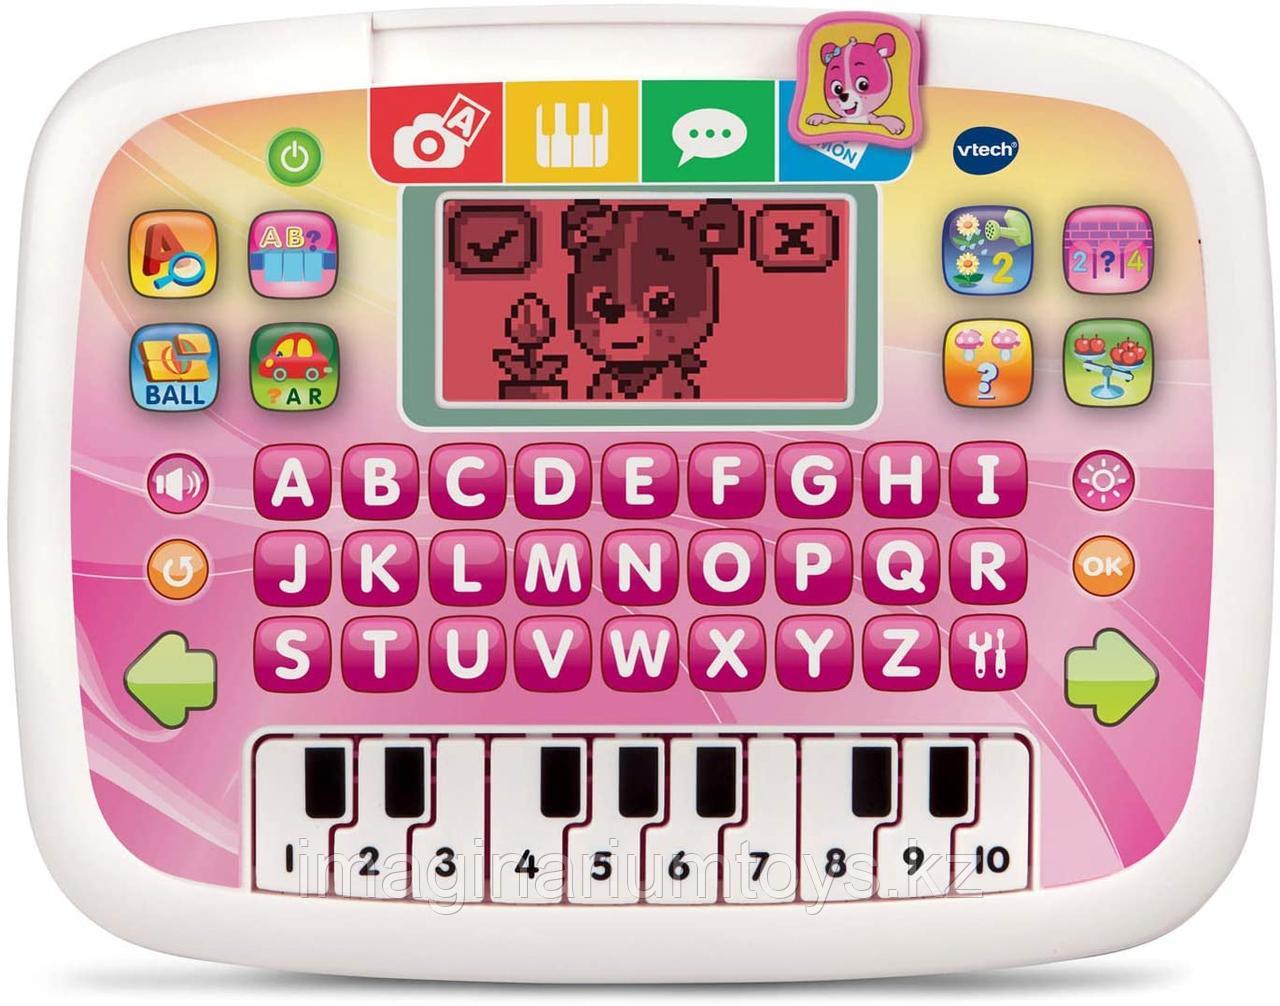 Обучающий игровой планшет VTech, розовый цвет, фото 1